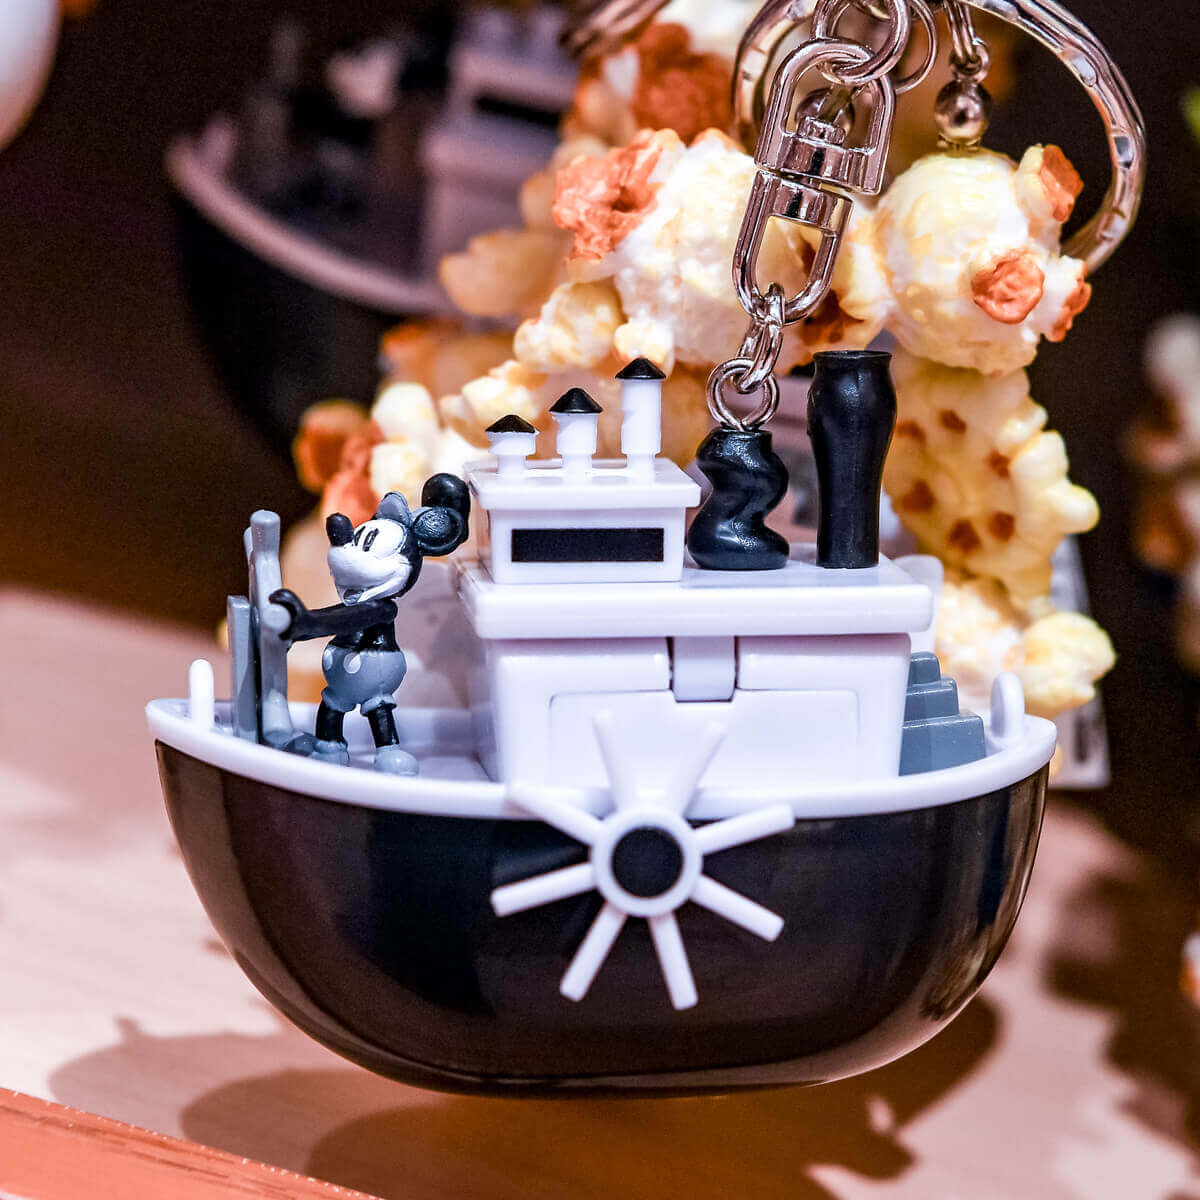 東京ディズニーランド 蒸気船ウィリー ポップコーンバケット型キーチェーン サイド